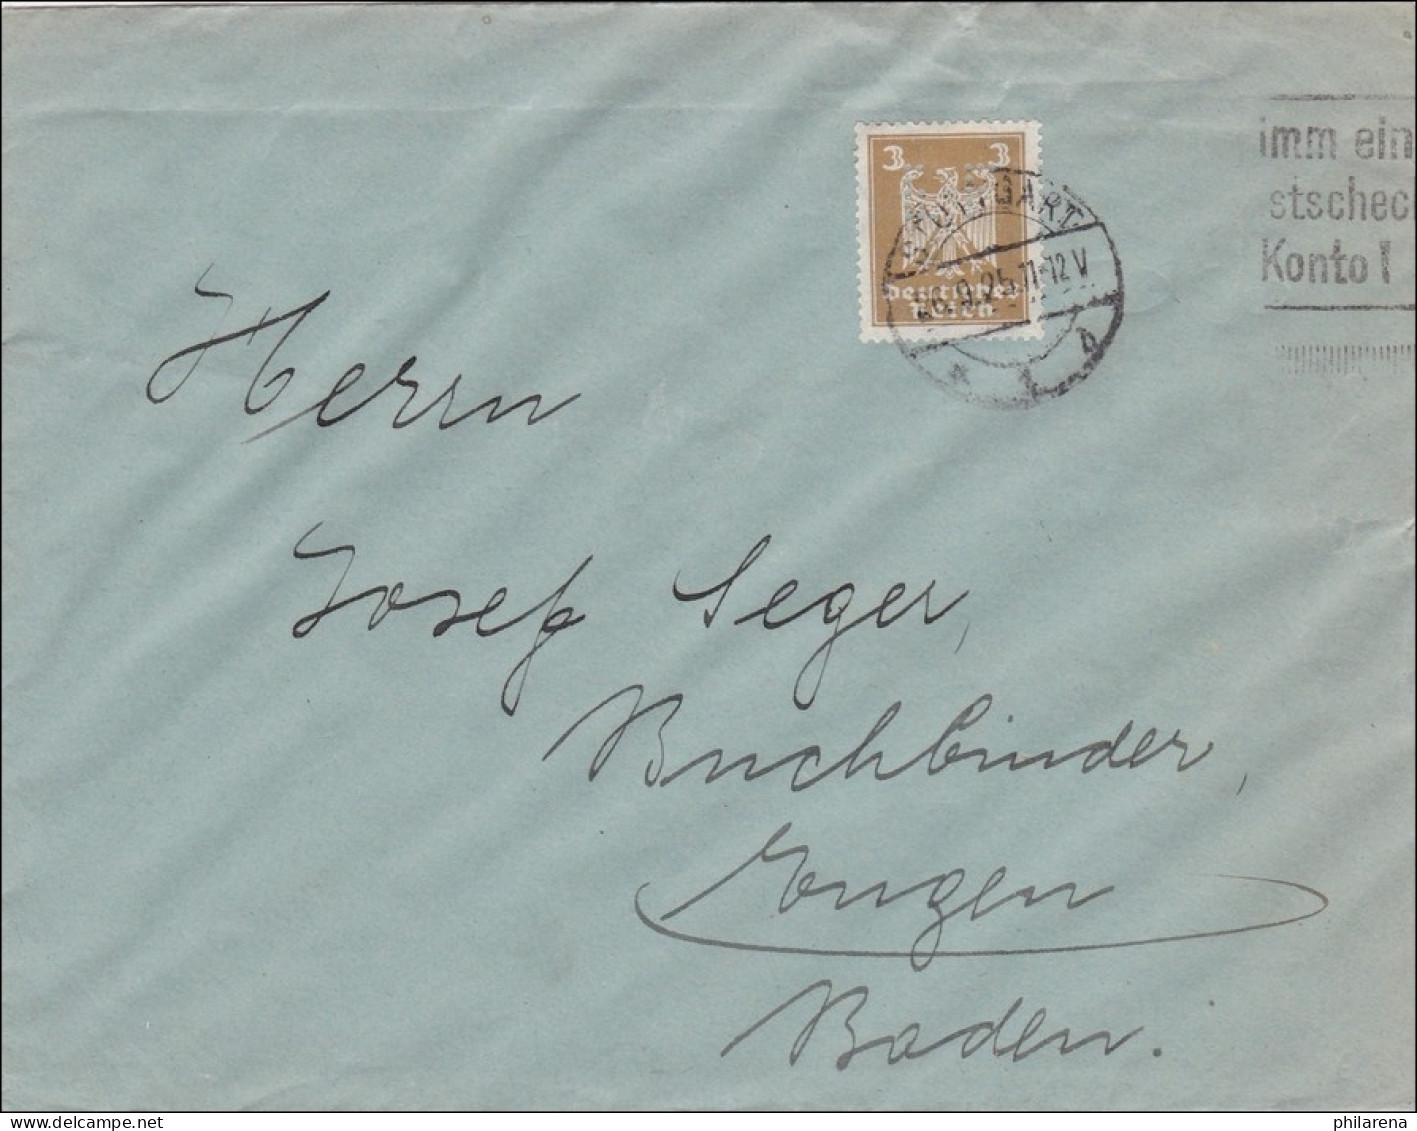 Perfin: Brief Aus Stuttgart, 1925, EF - Lettres & Documents